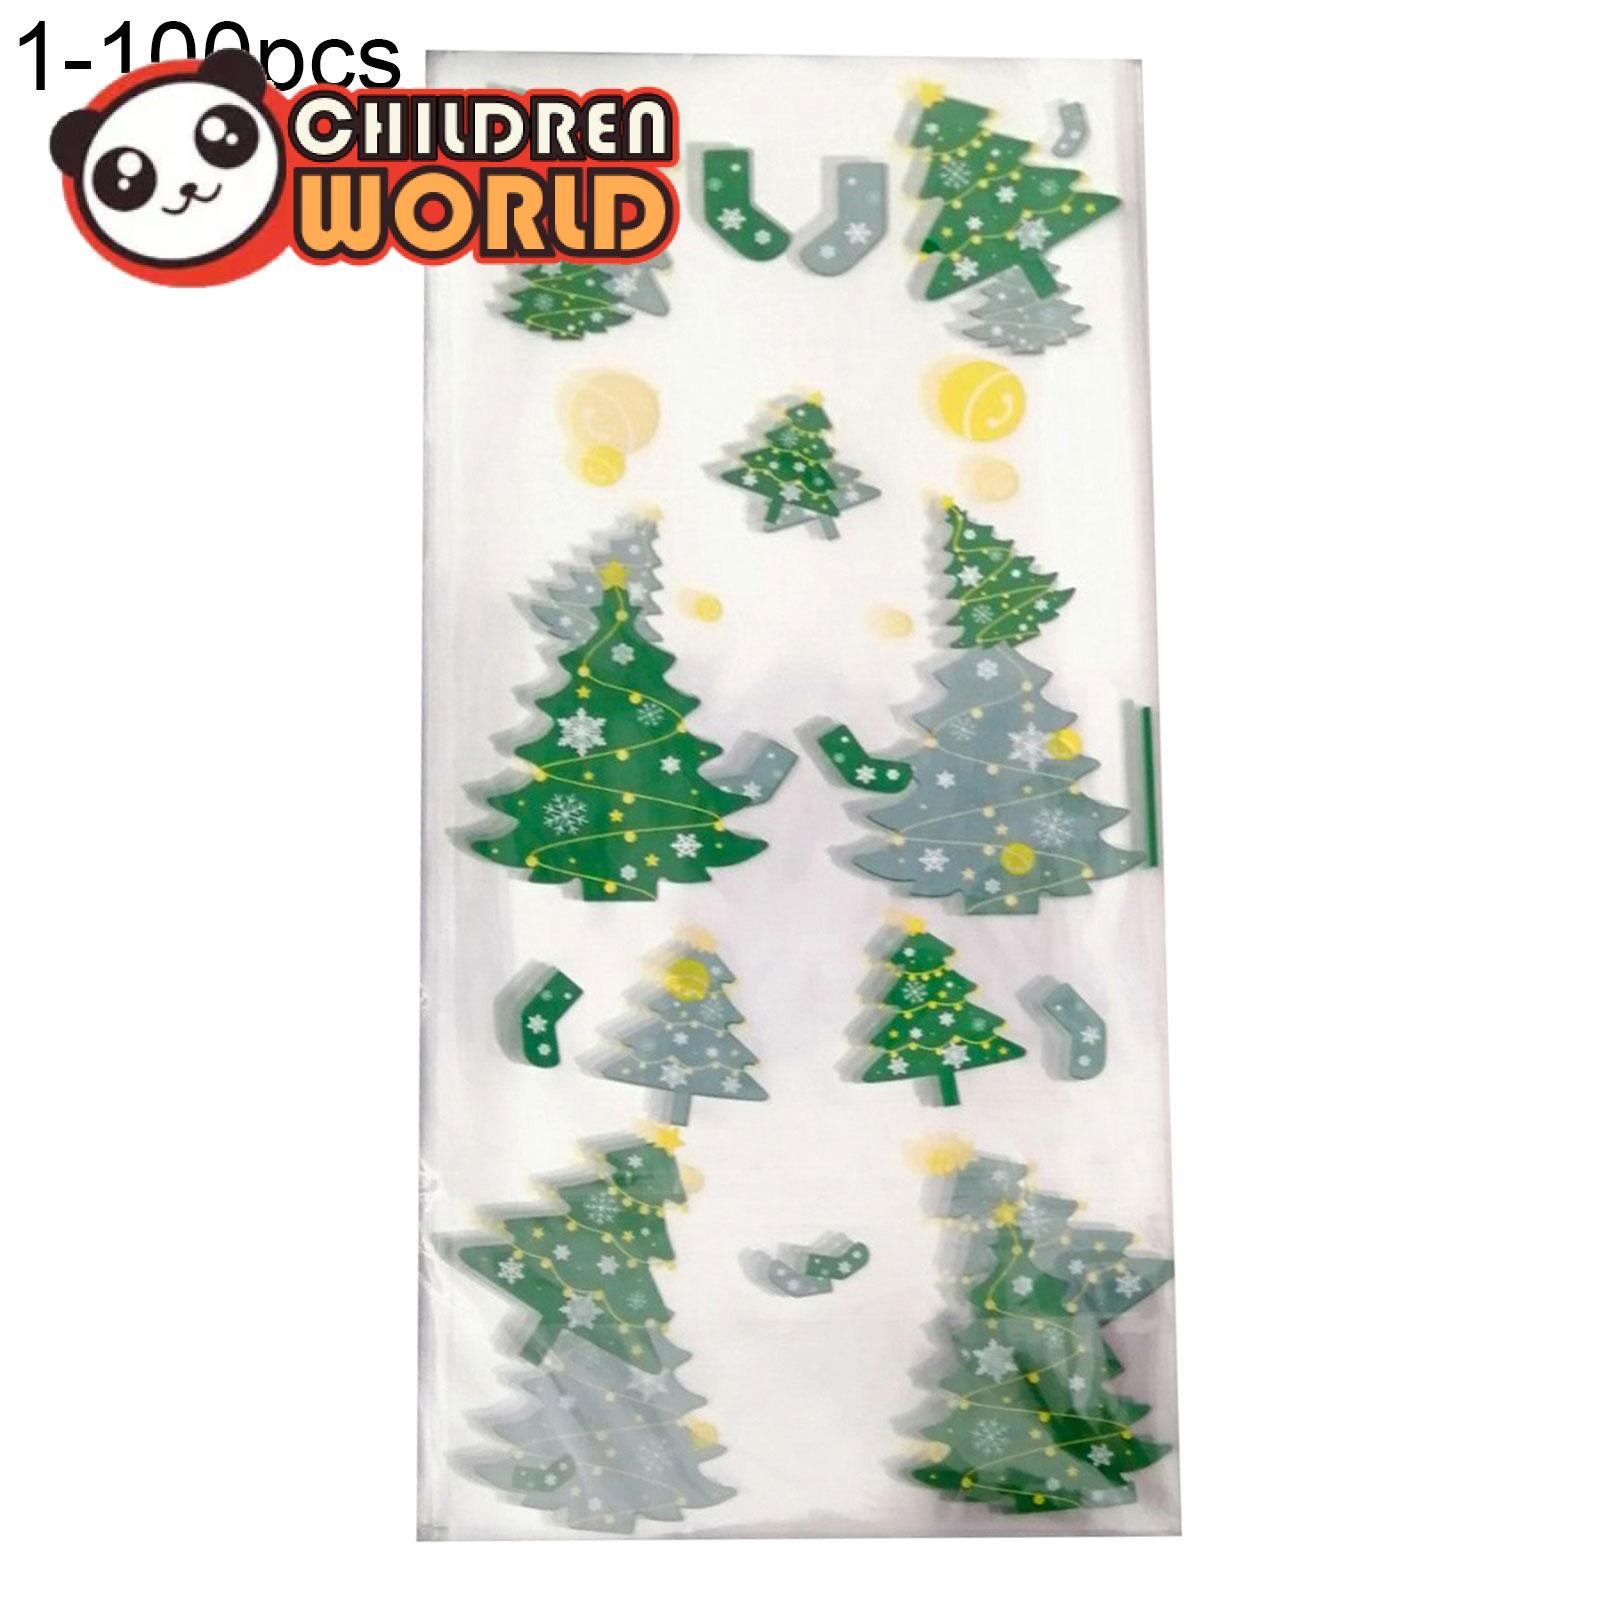 Childrenworld 100Pcs Multi-Function กระเป๋าใส่ของแบบพกพาพลาสติกเกล็ดหิมะคริสต์มาสถุงใส่ของสำหรับงานปาร์ตี้